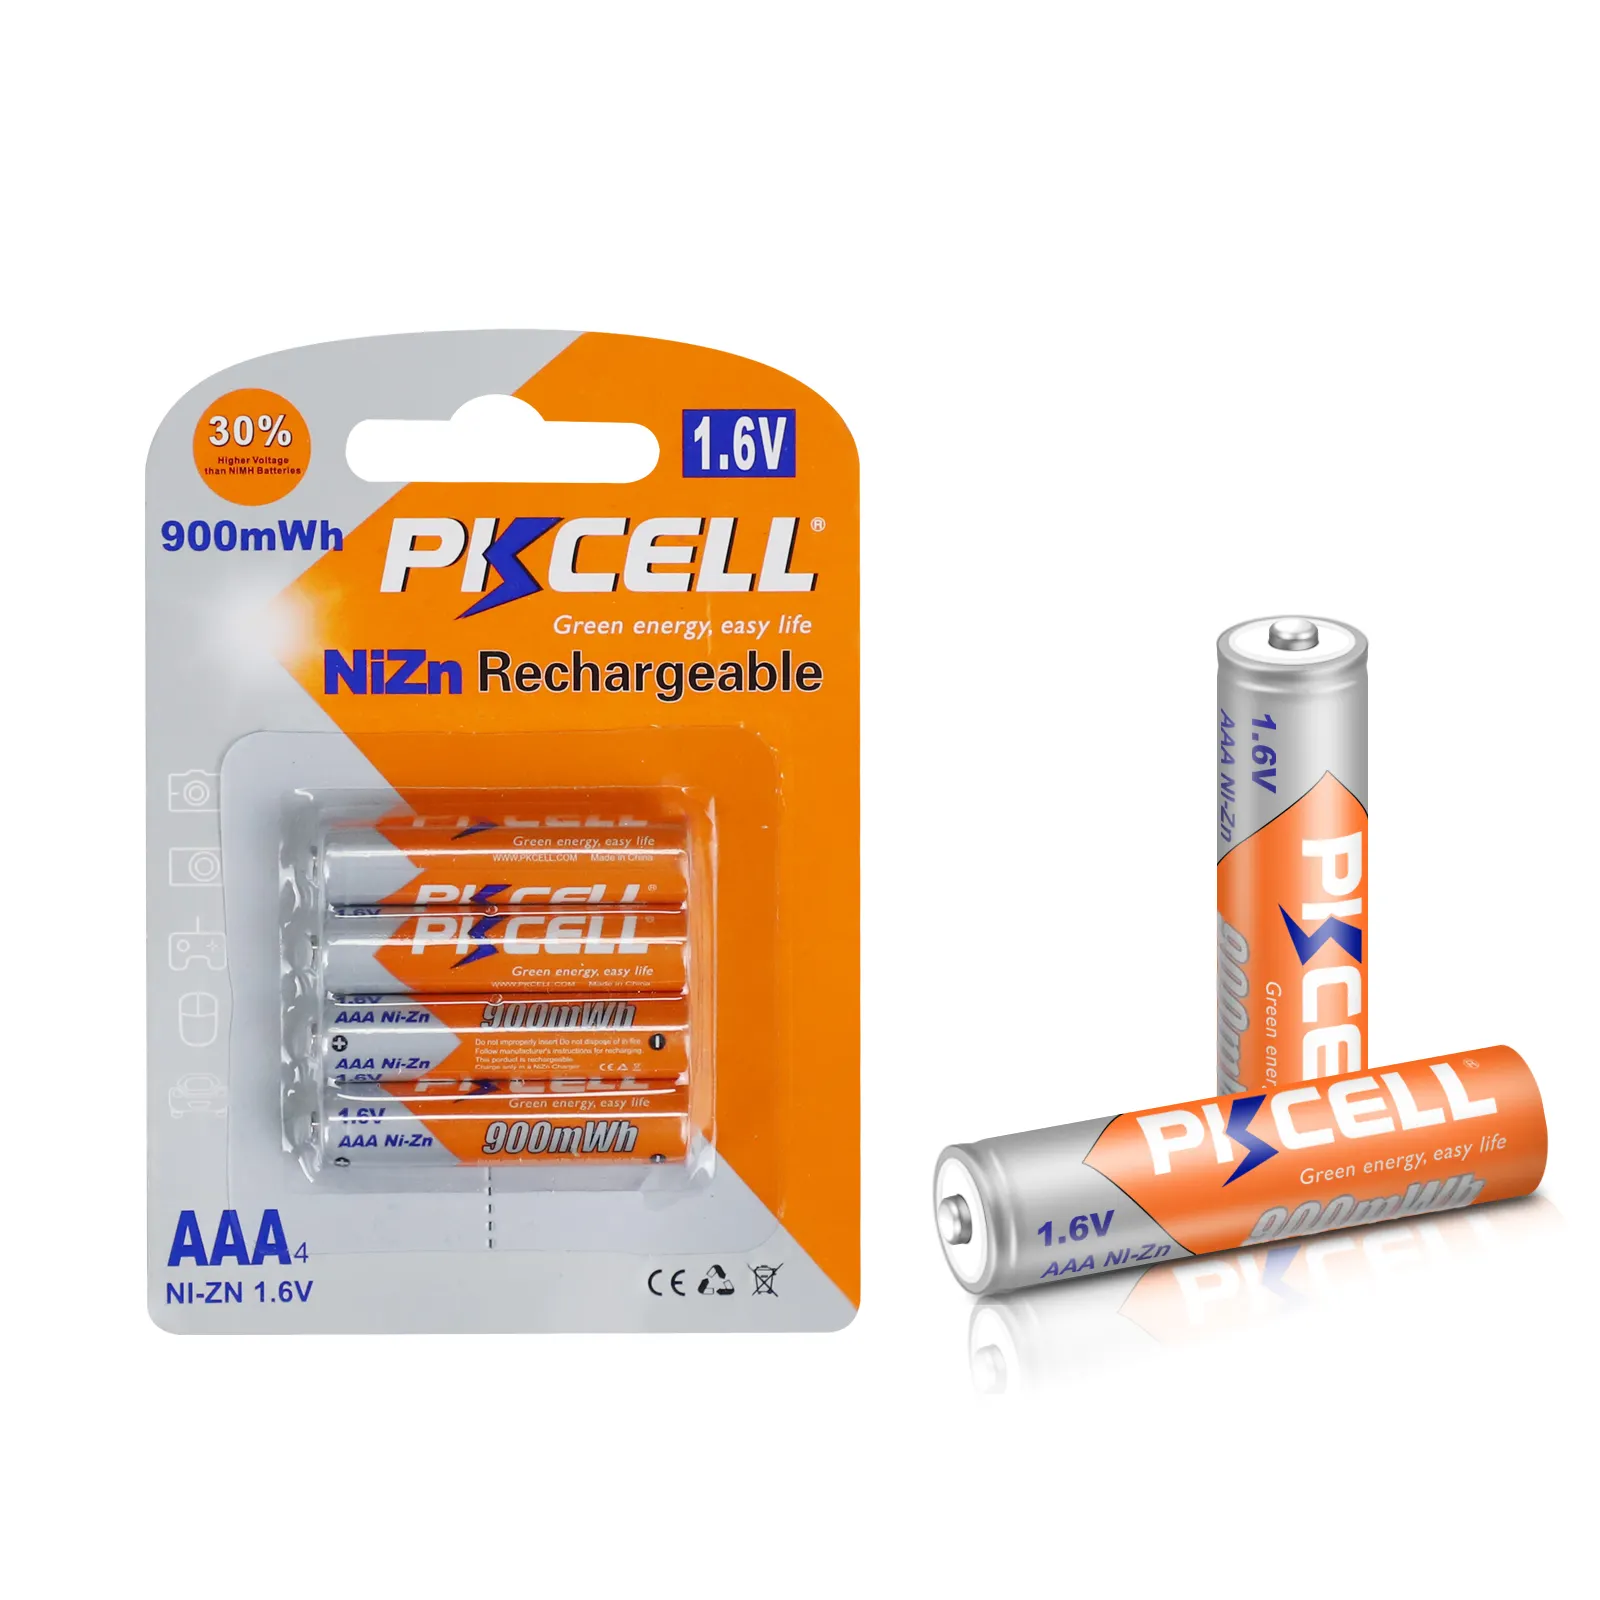 PKCELL — batterie Nizn, 1.6v, 10 000 tr/min, Nickel-Zinc, qualité AAA, Rechargeable, nouveauté